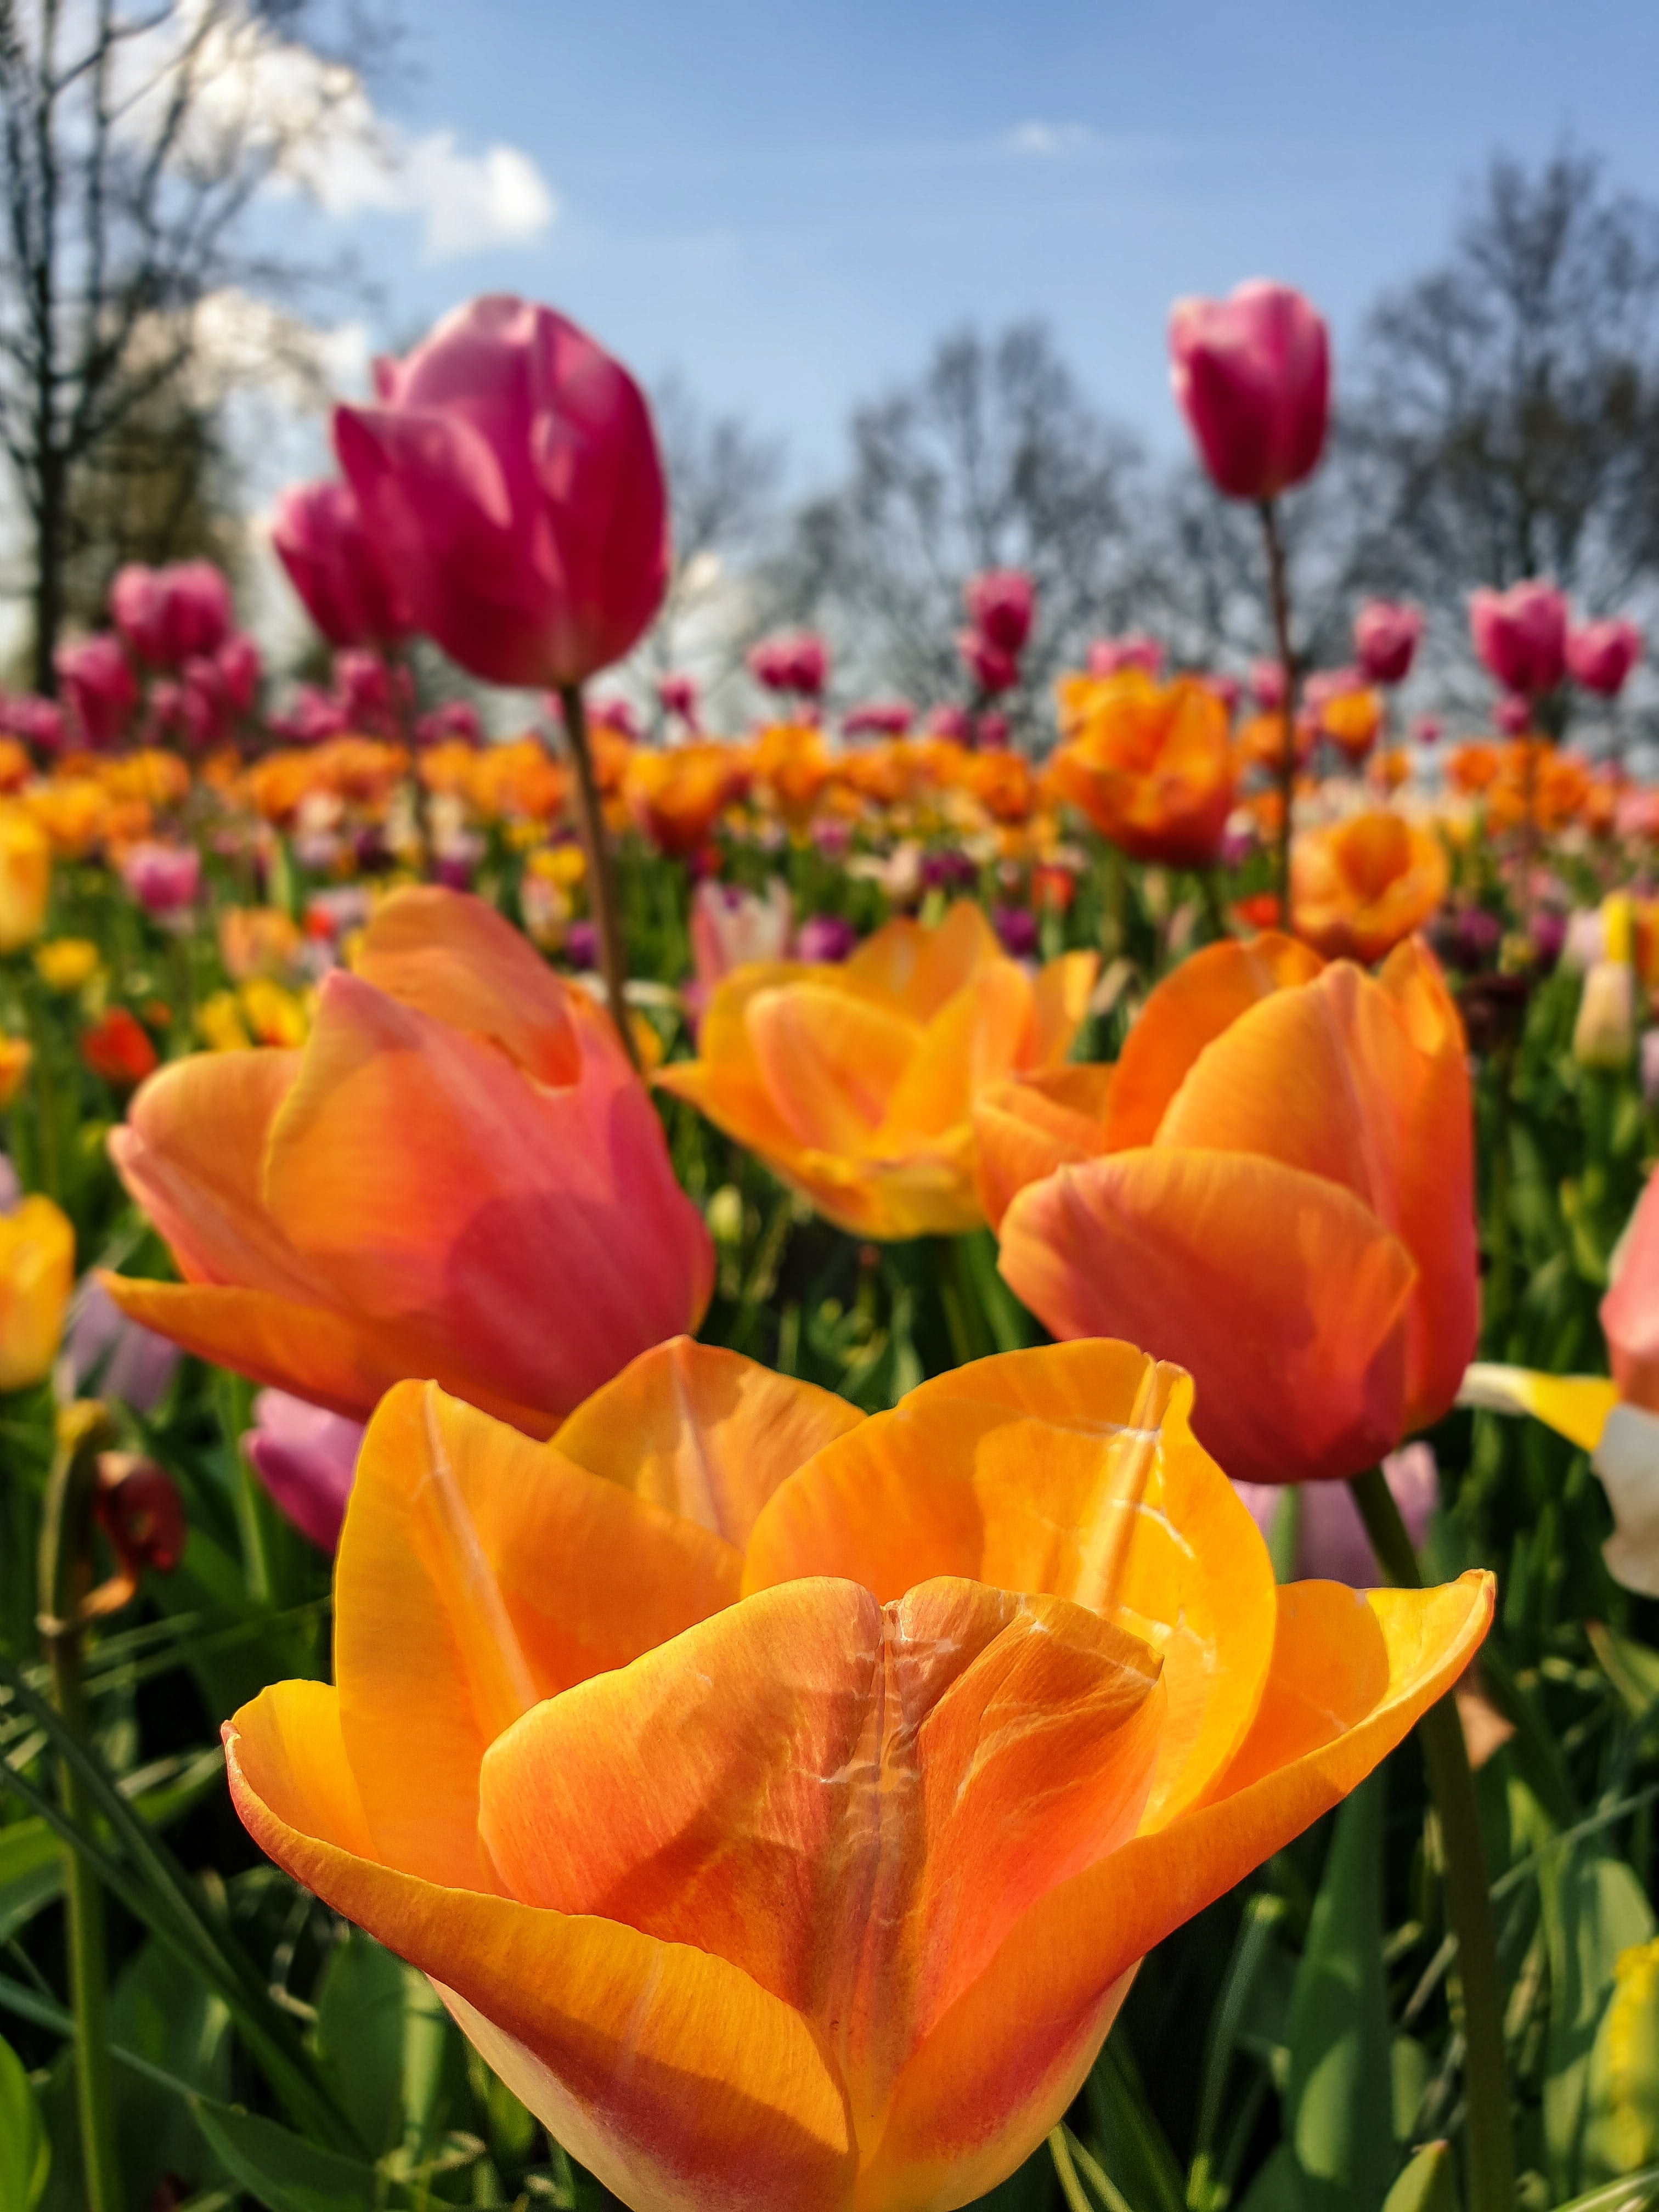 Multi colored tulips